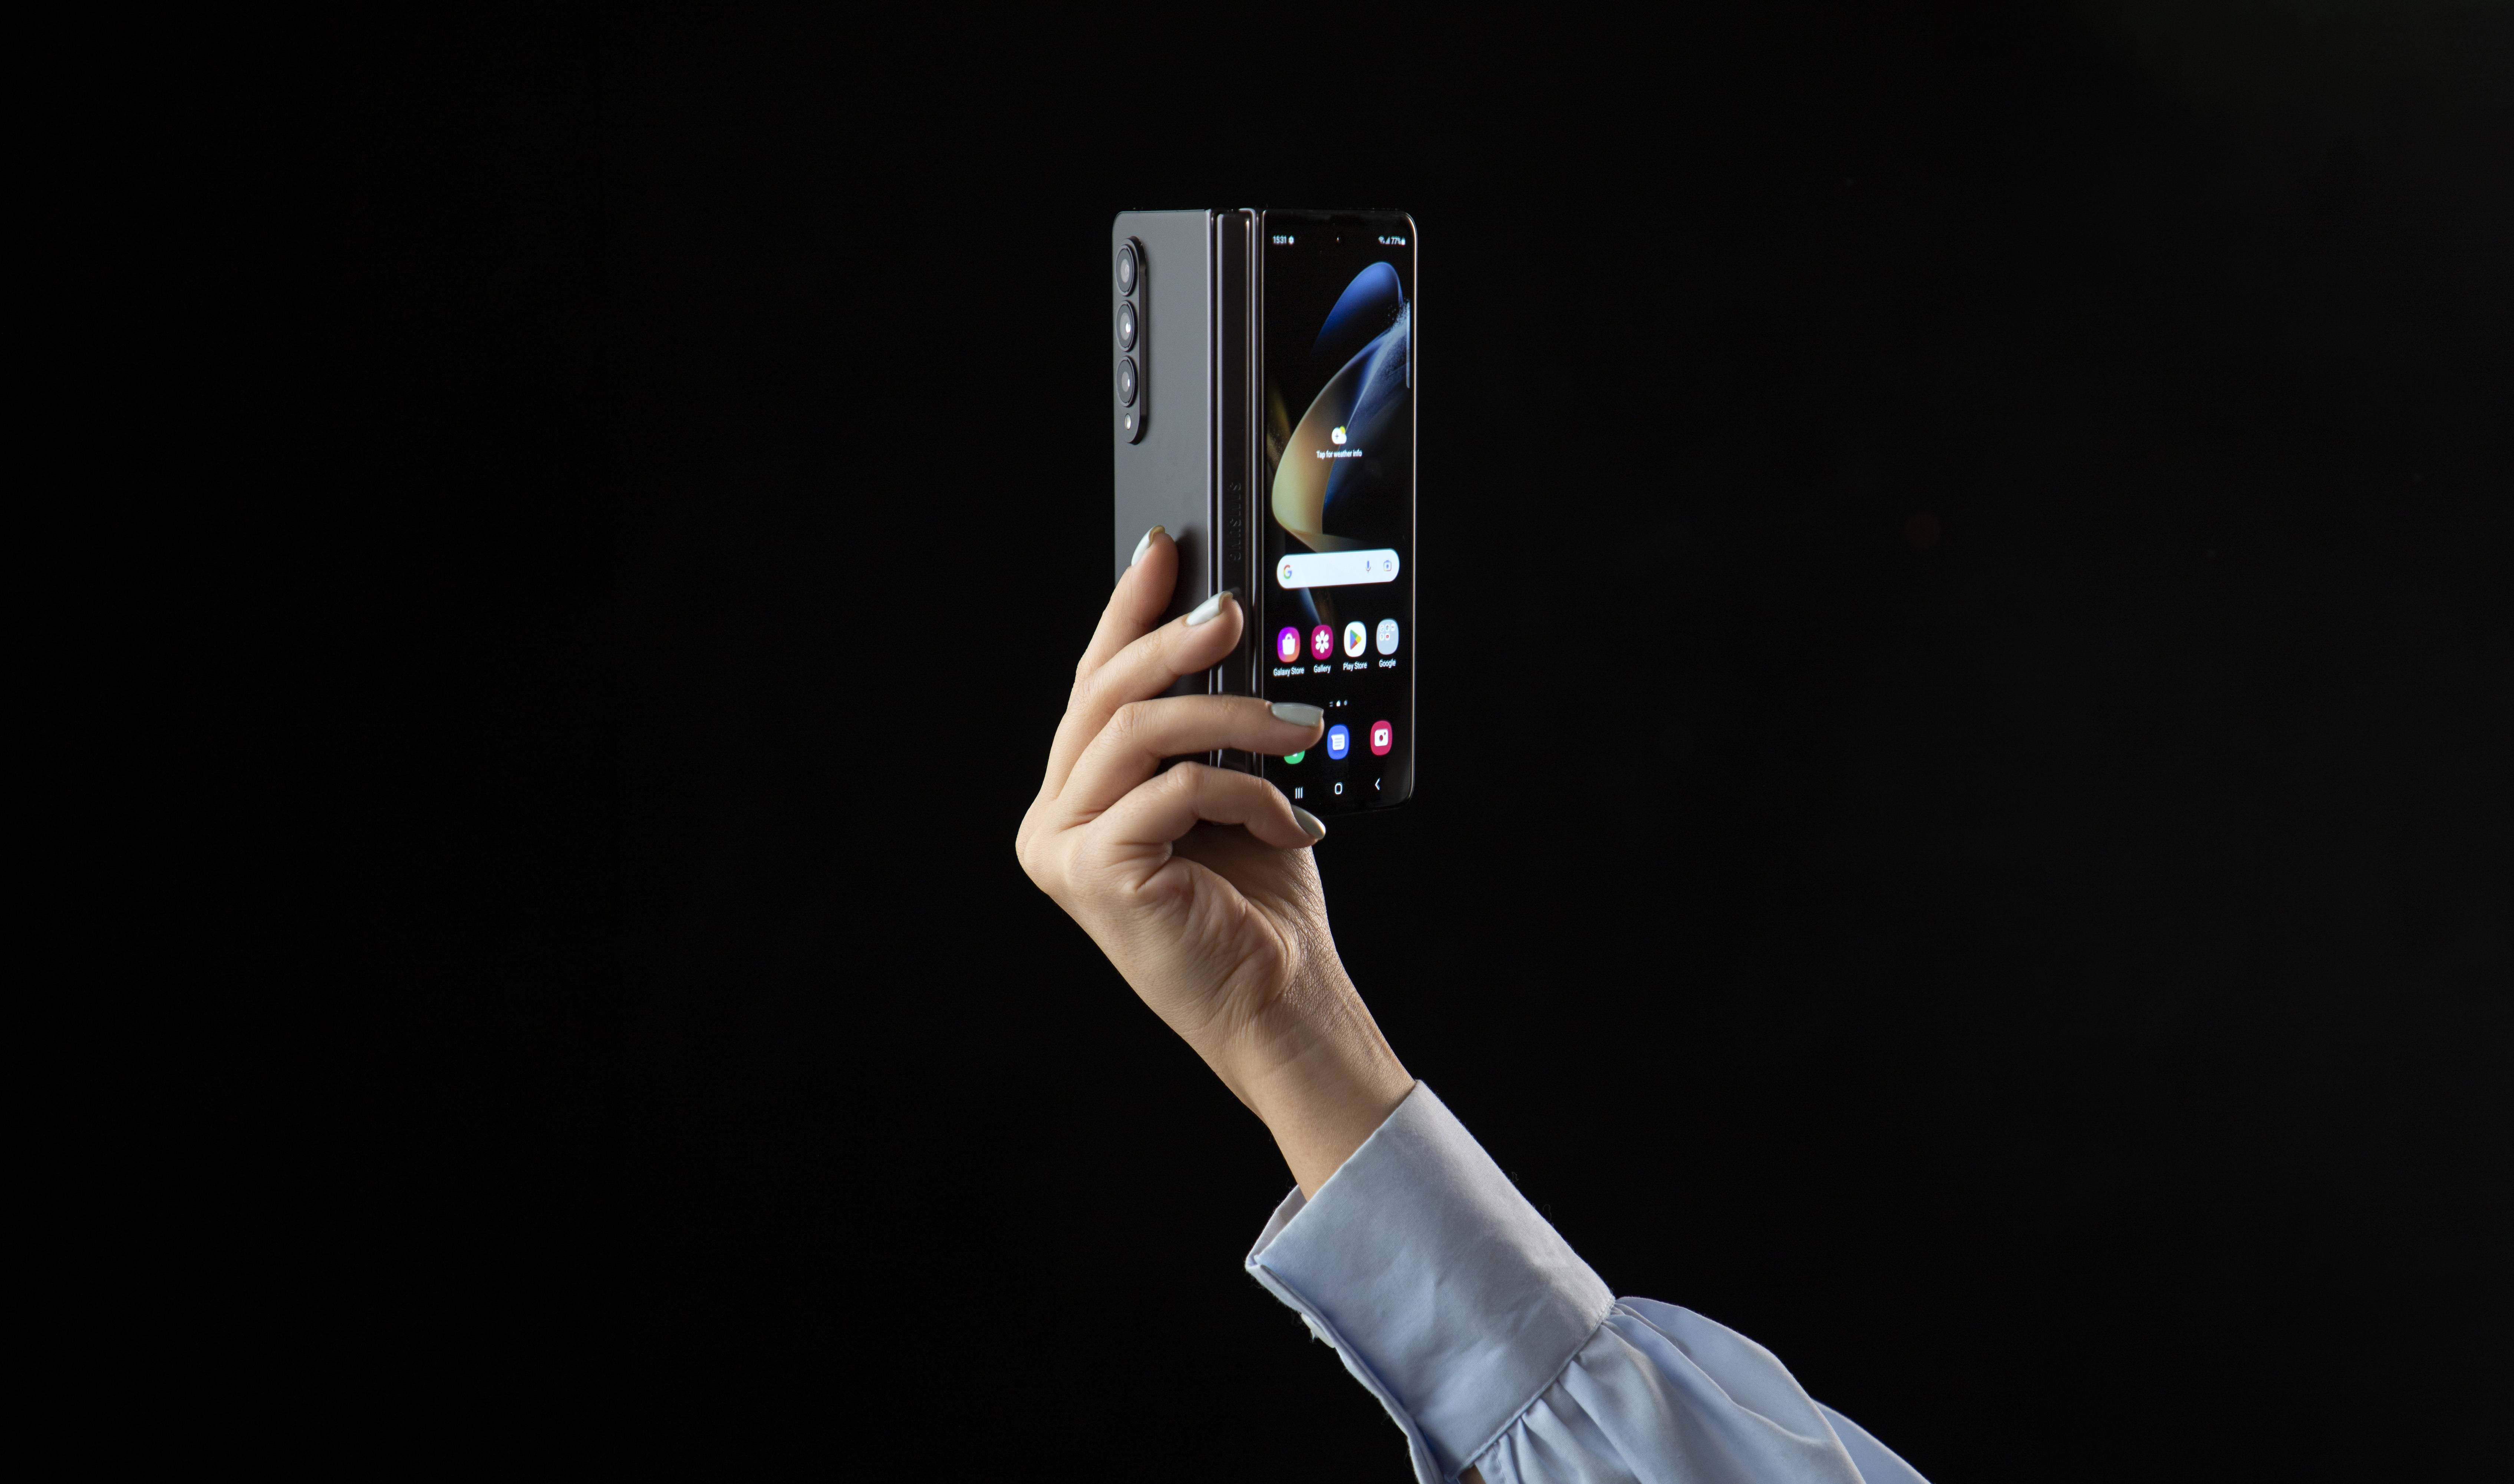 گوشی موبایل سامسونگ مدل Galaxy Z Fold4